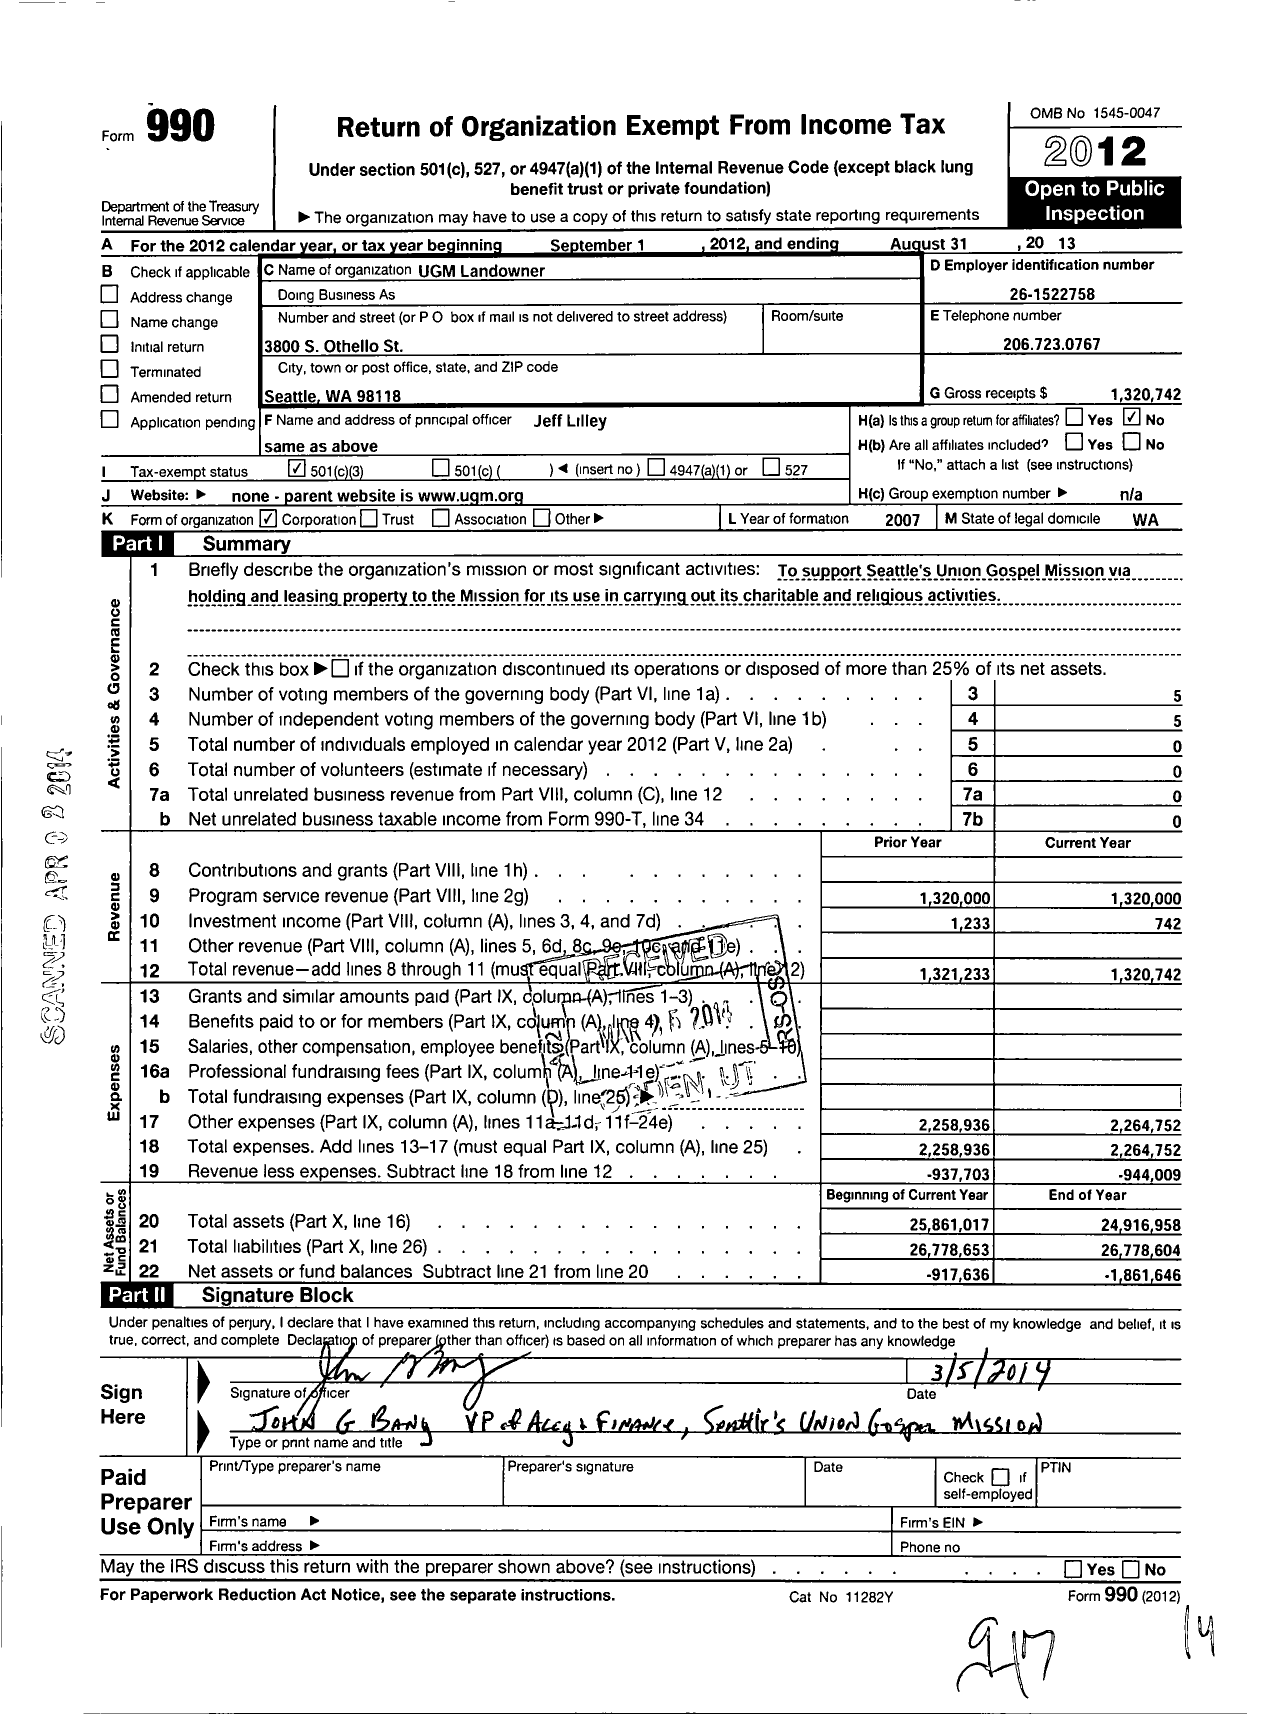 Image of first page of 2012 Form 990 for Ugm Landowner